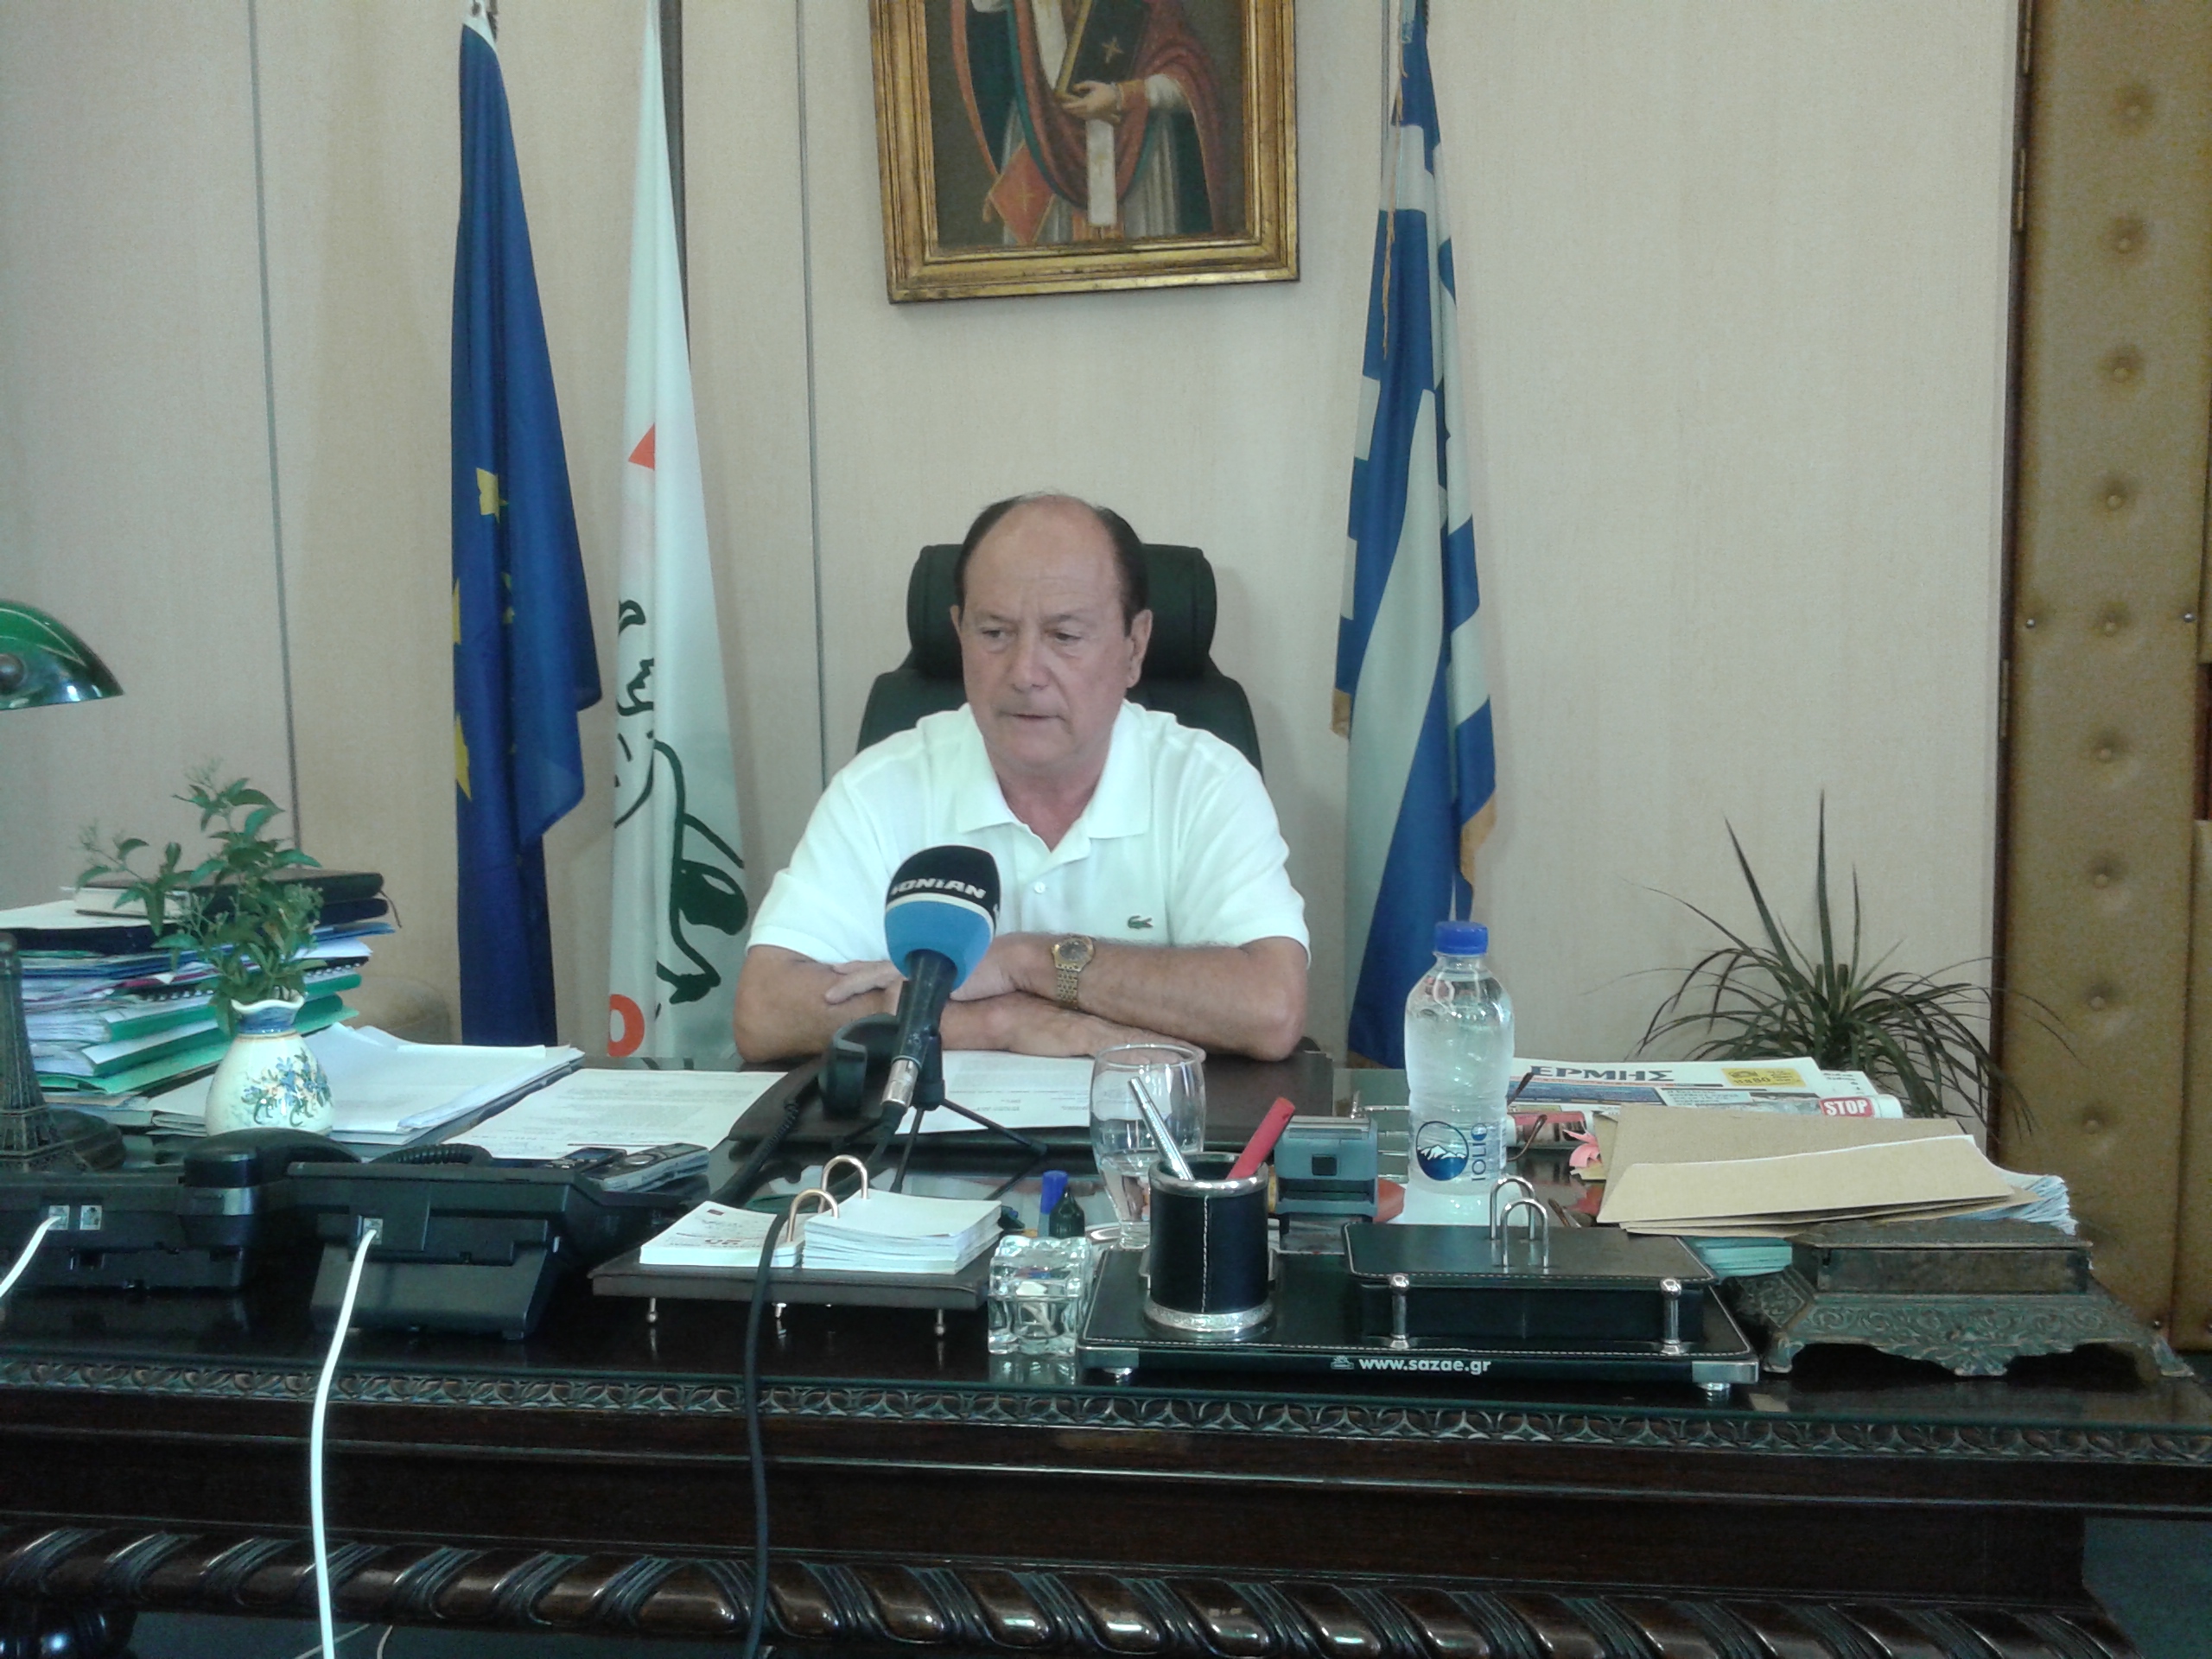 Ζάκυνθος: Ο νόμος και το σχέδιο πόλης θα ισχύσει και στη Μπόχαλη σύμφωνα με τον δήμαρχο